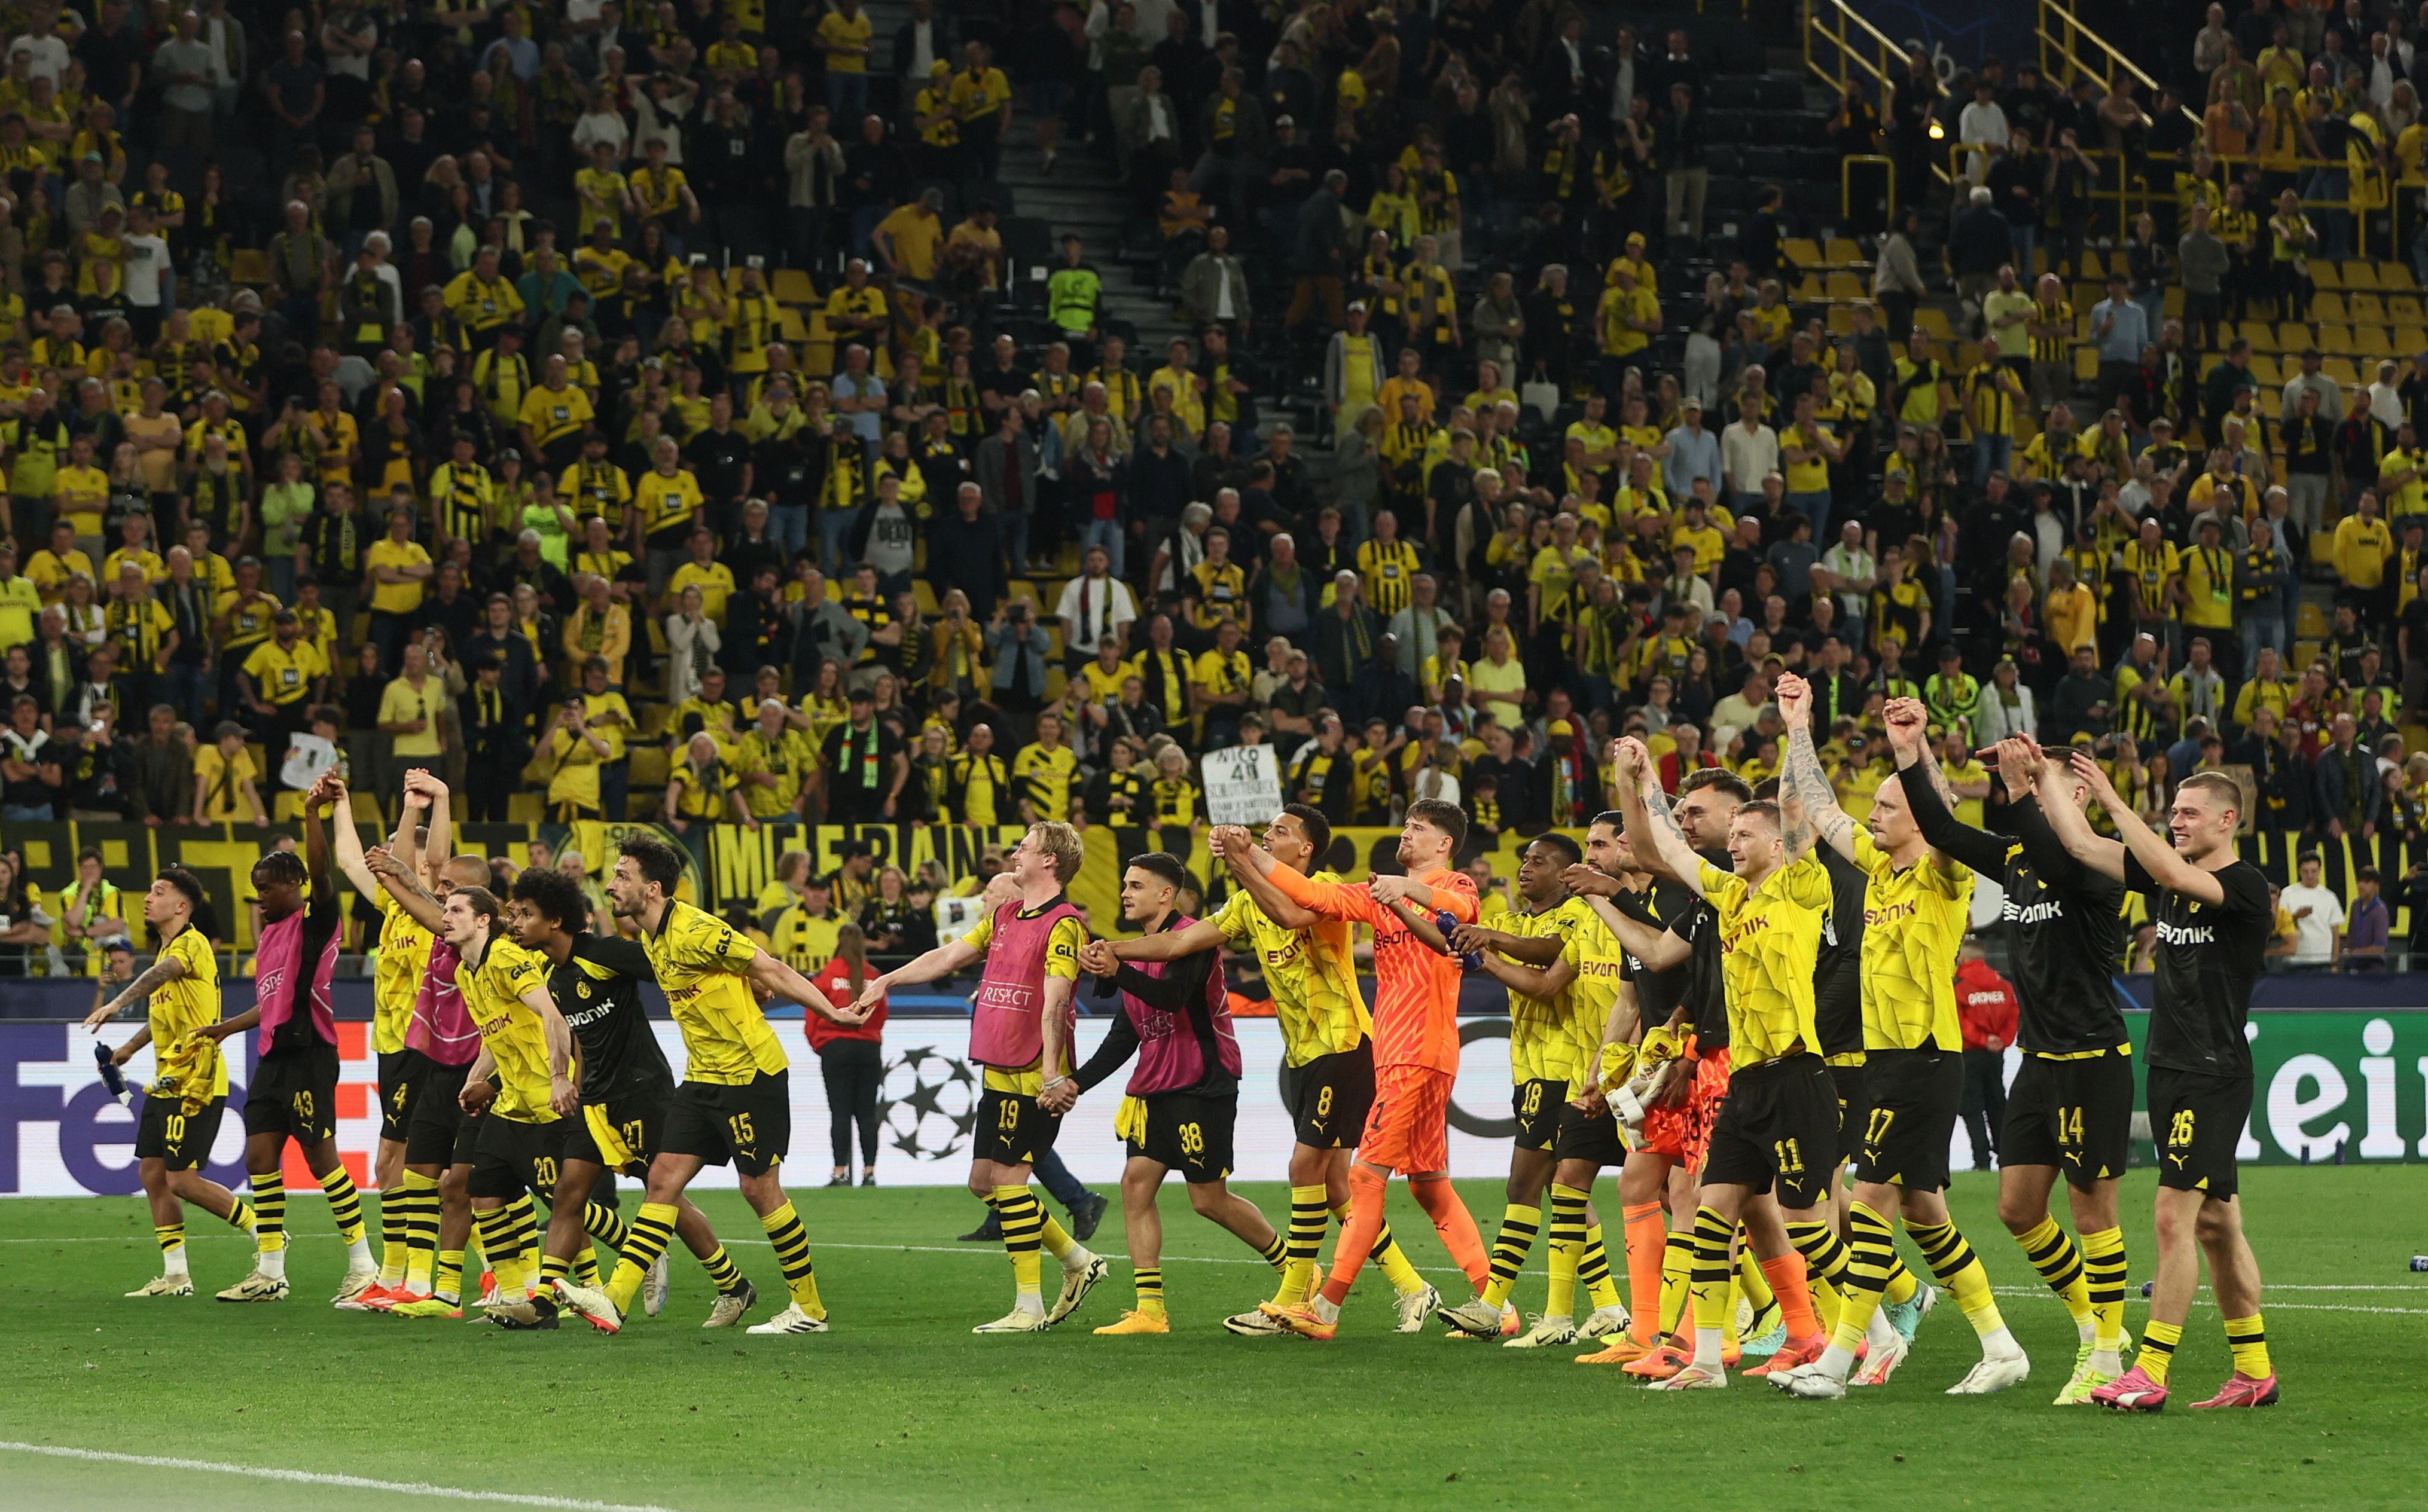 En París el Borussia Dortmund buscará defender su ventaja y convertirse en finalista de la Champions League 23/24 - crédito REUTERS